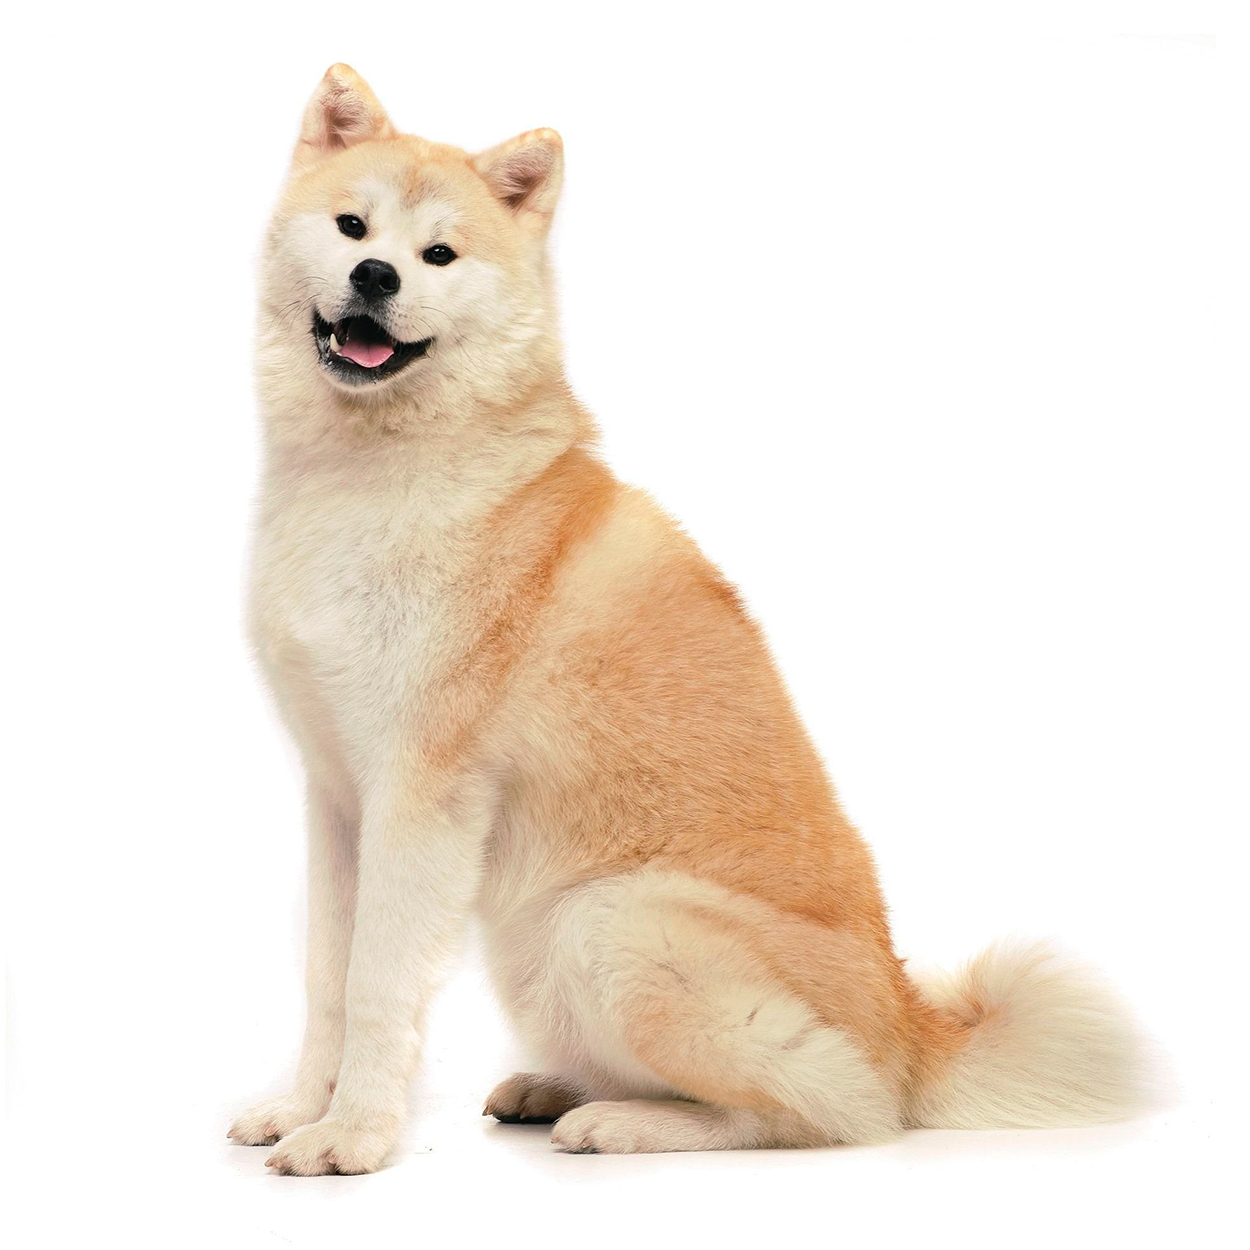 Pug dog isolated on a white background